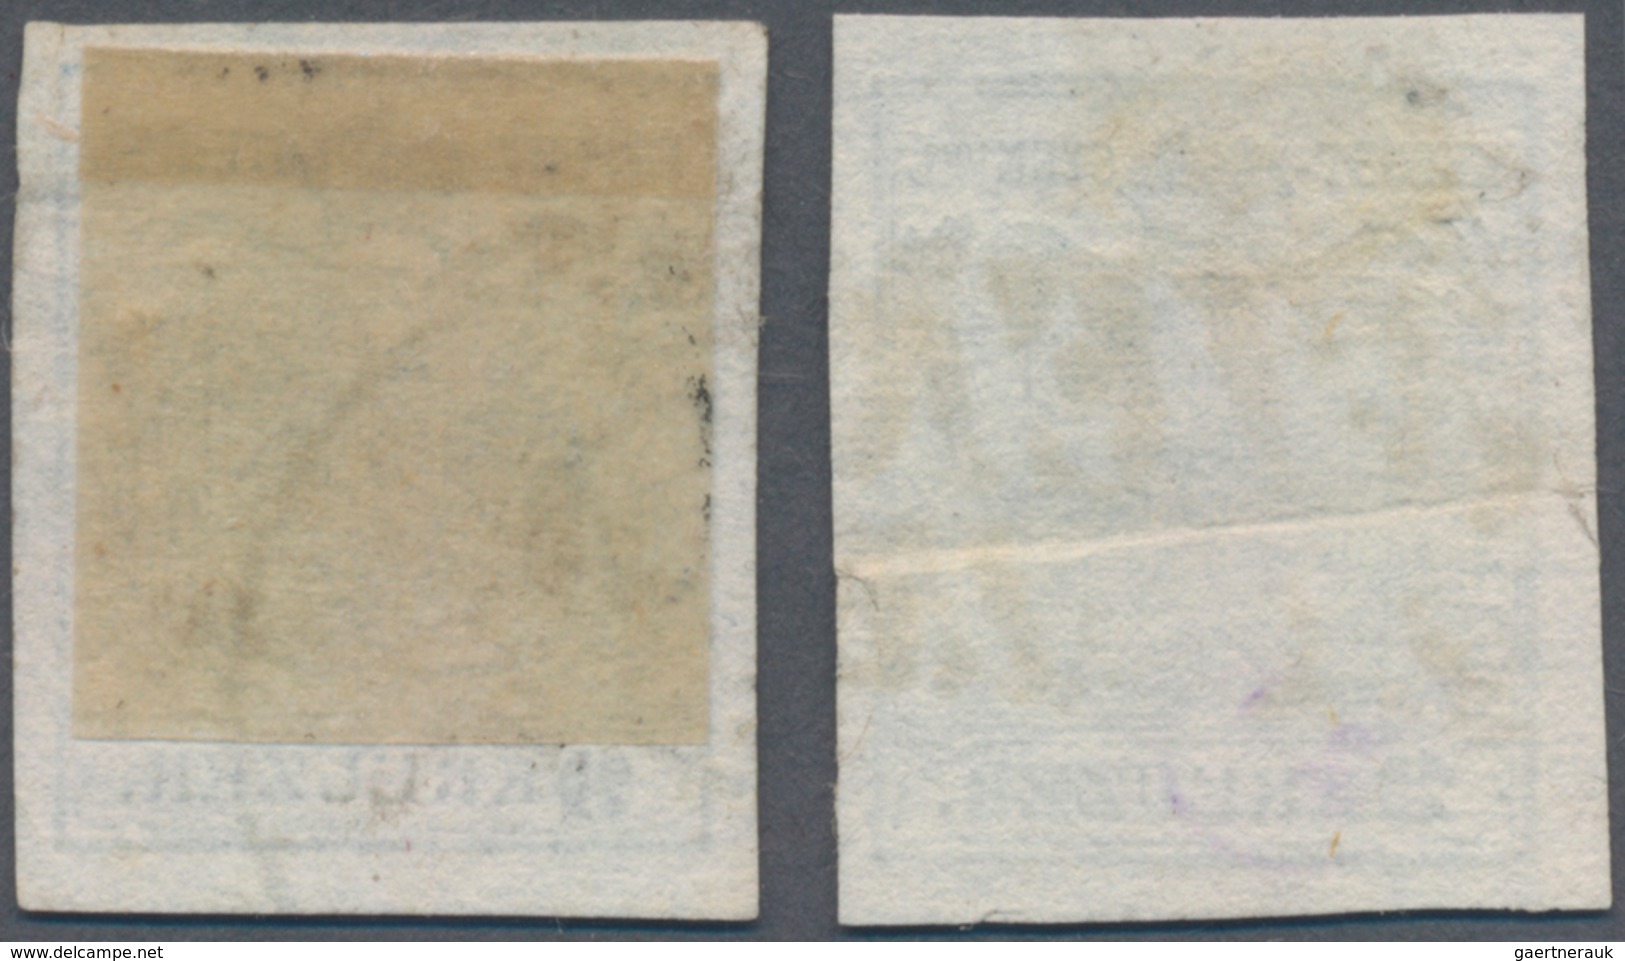 Österreich: 1850, 9 Kr. Handpapier Type I, Zwei Werte Mit Hoher Bzw. Tiefer "9", Je Gestempelt Und F - Used Stamps